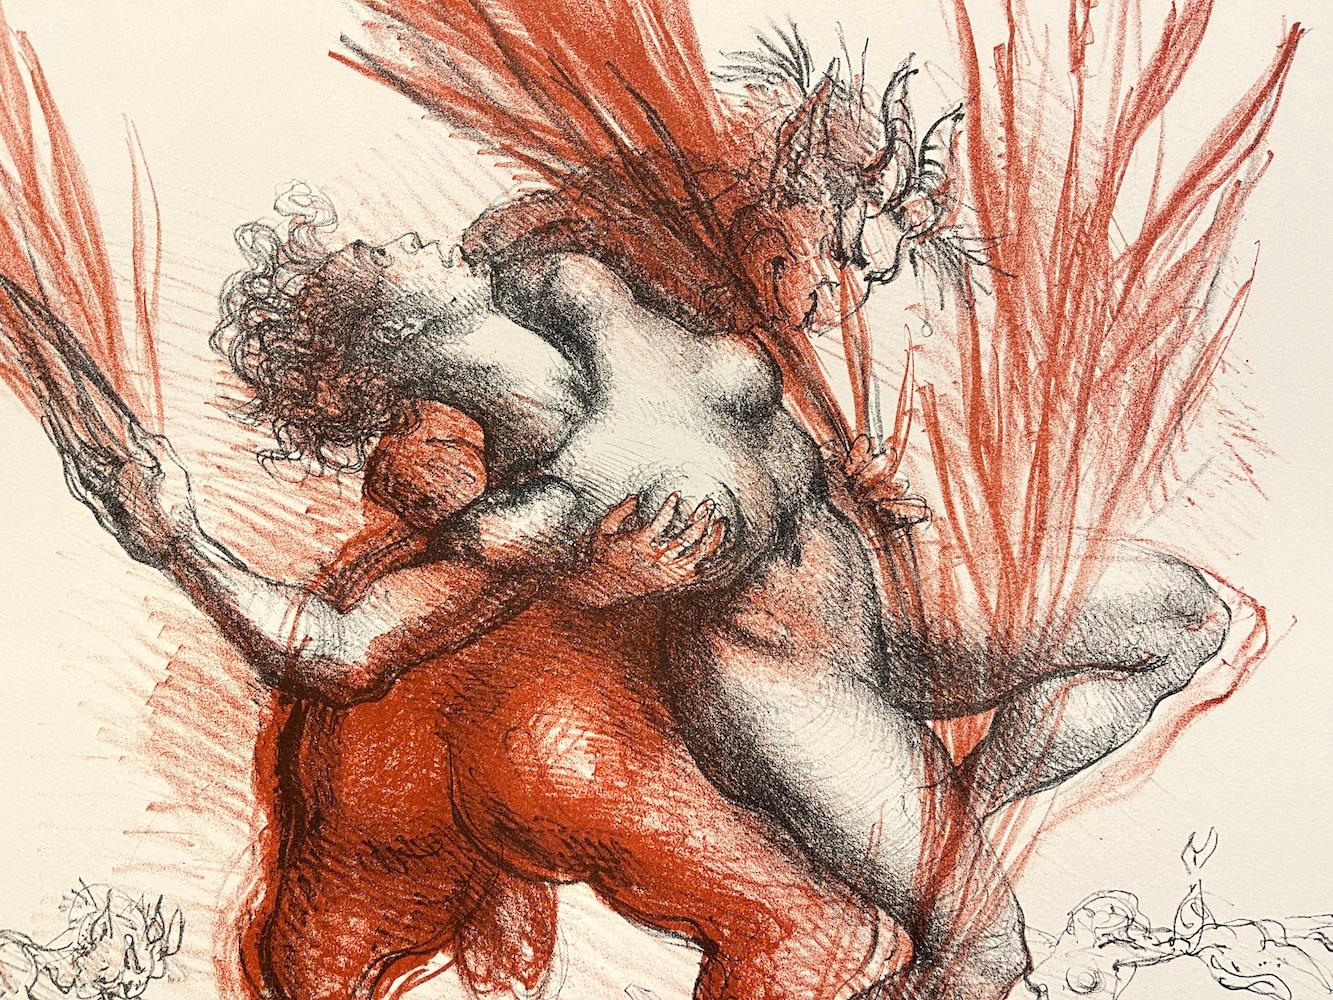 OVID METAMORPHOSES - Metamorfosi di Ovidio est une lithographie originale dessinée à la main par l'artiste sculpteur italien Marcello Tommasi (1928-2008). Imprimé à la main avec de l'encre noire et de l'encre brune rouge foncé sur du papier